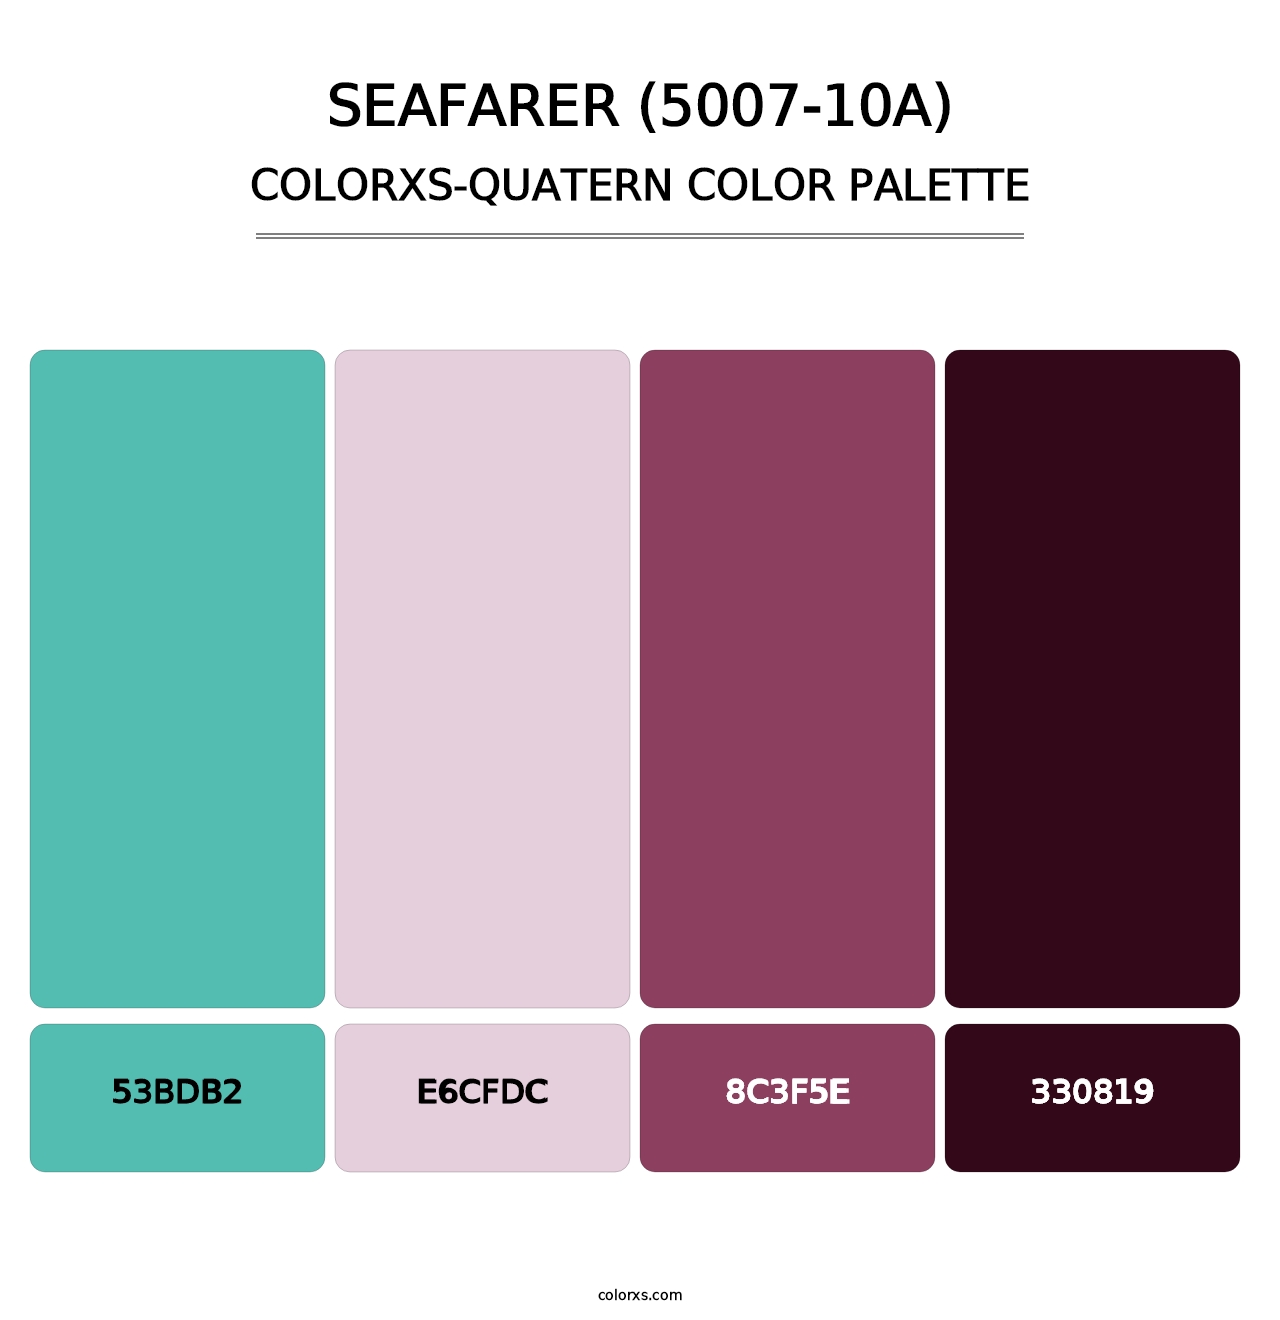 Seafarer (5007-10A) - Colorxs Quatern Palette